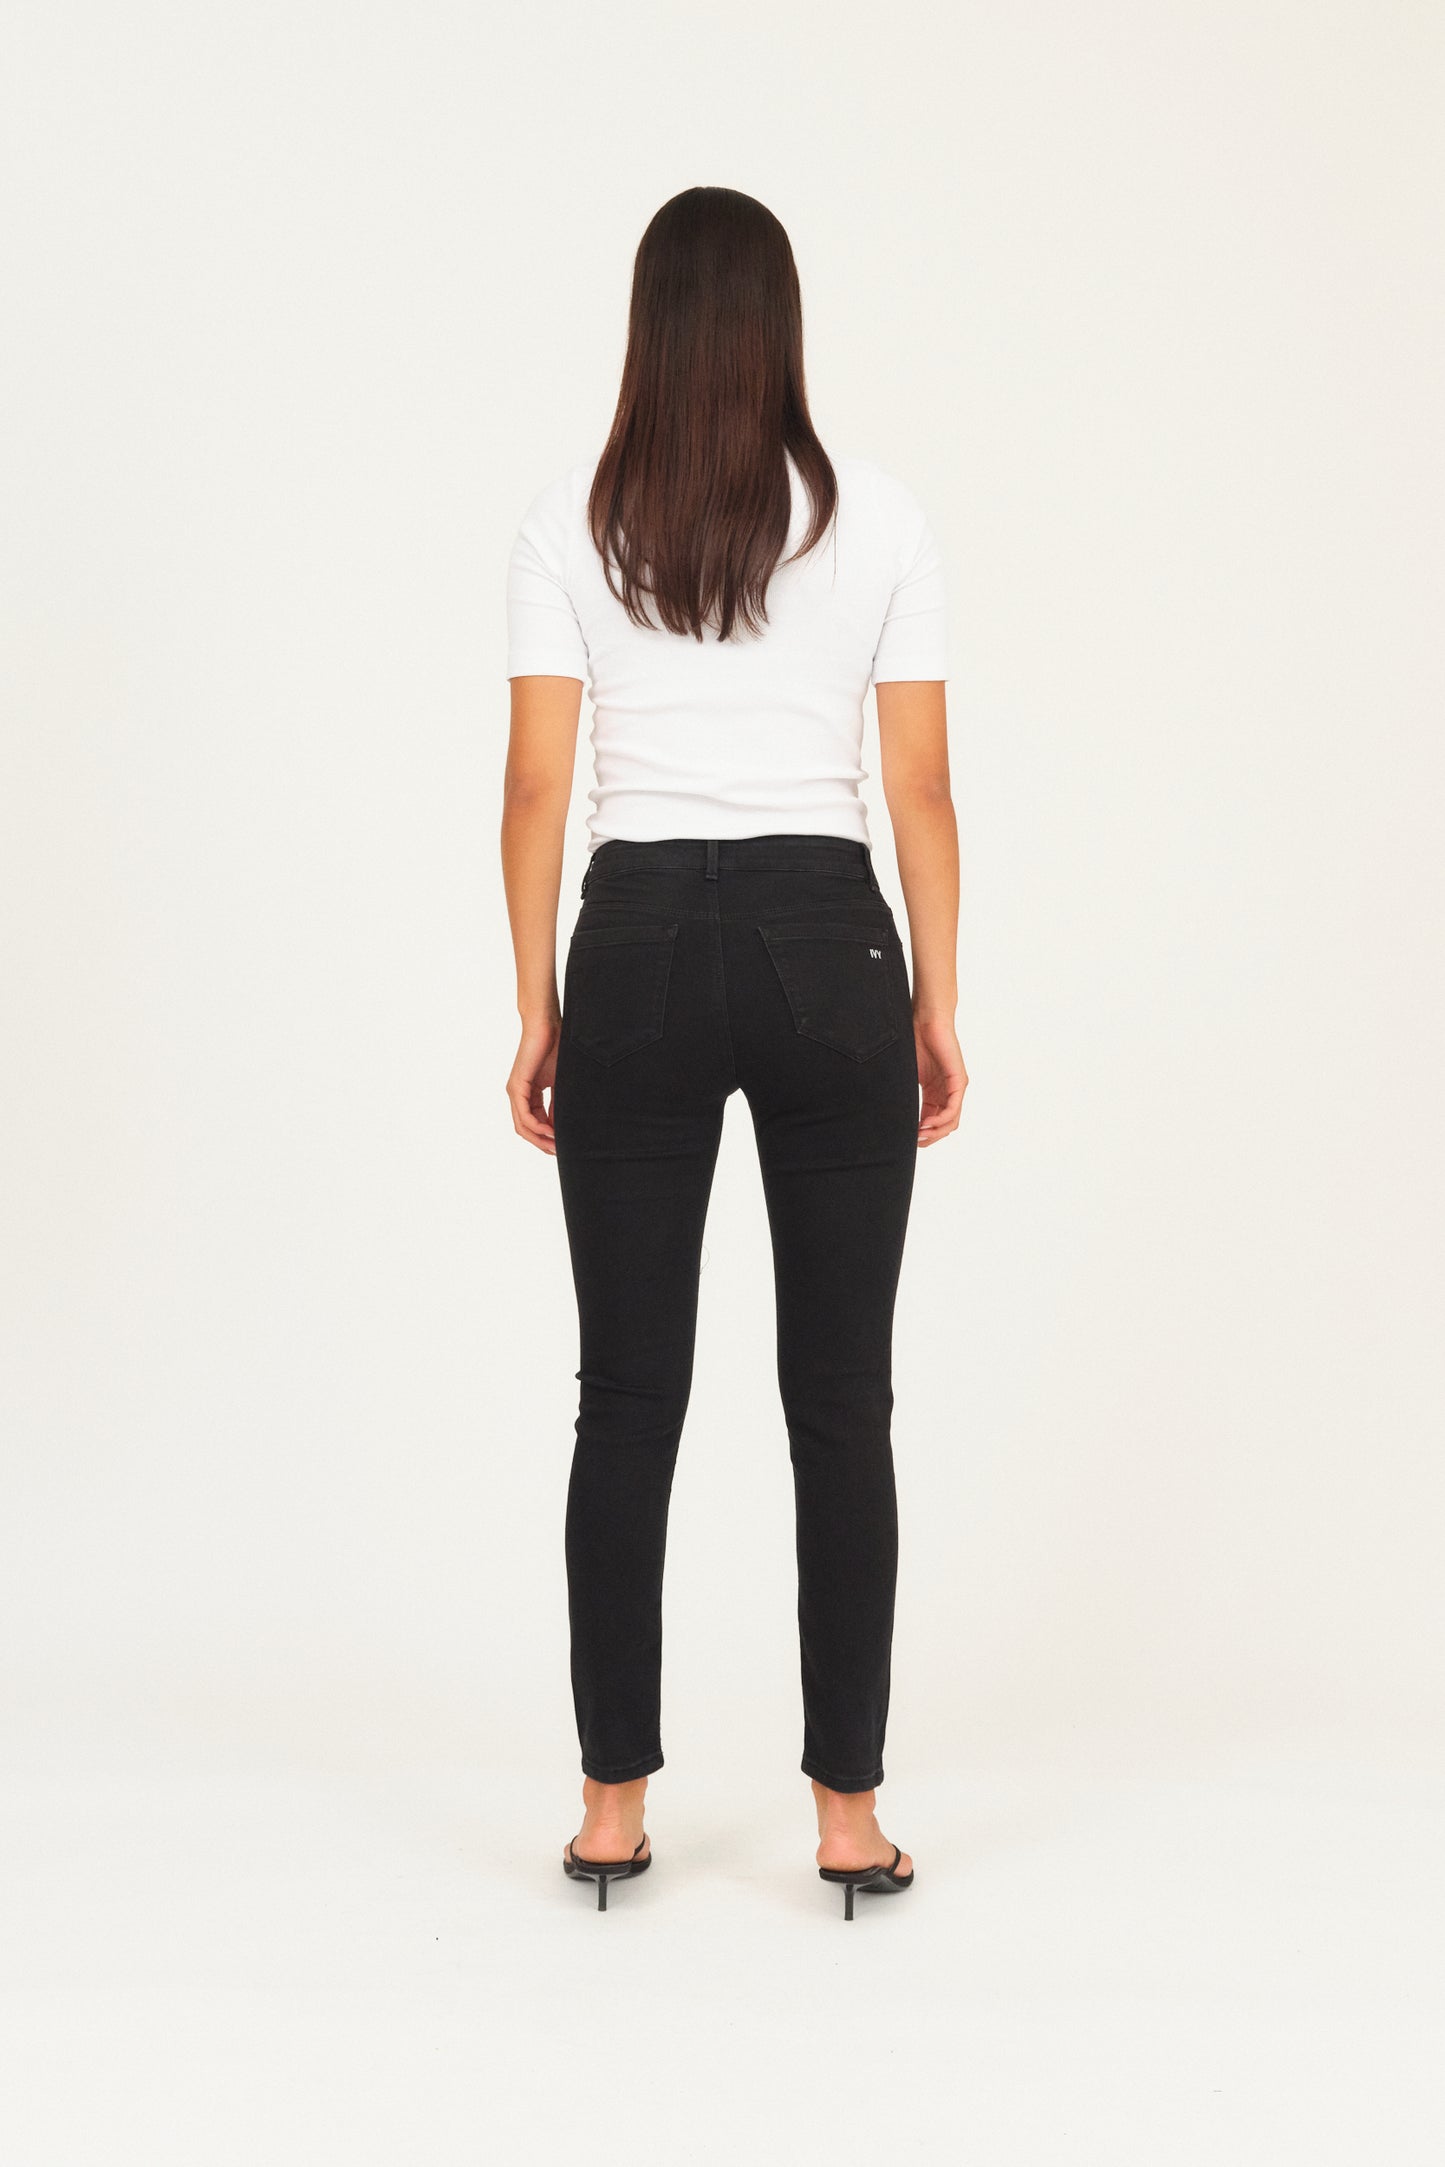 IVY Copenhagen IVY-Alexa Jeans Cool Excellent Black Jeans & Pants 9 Black